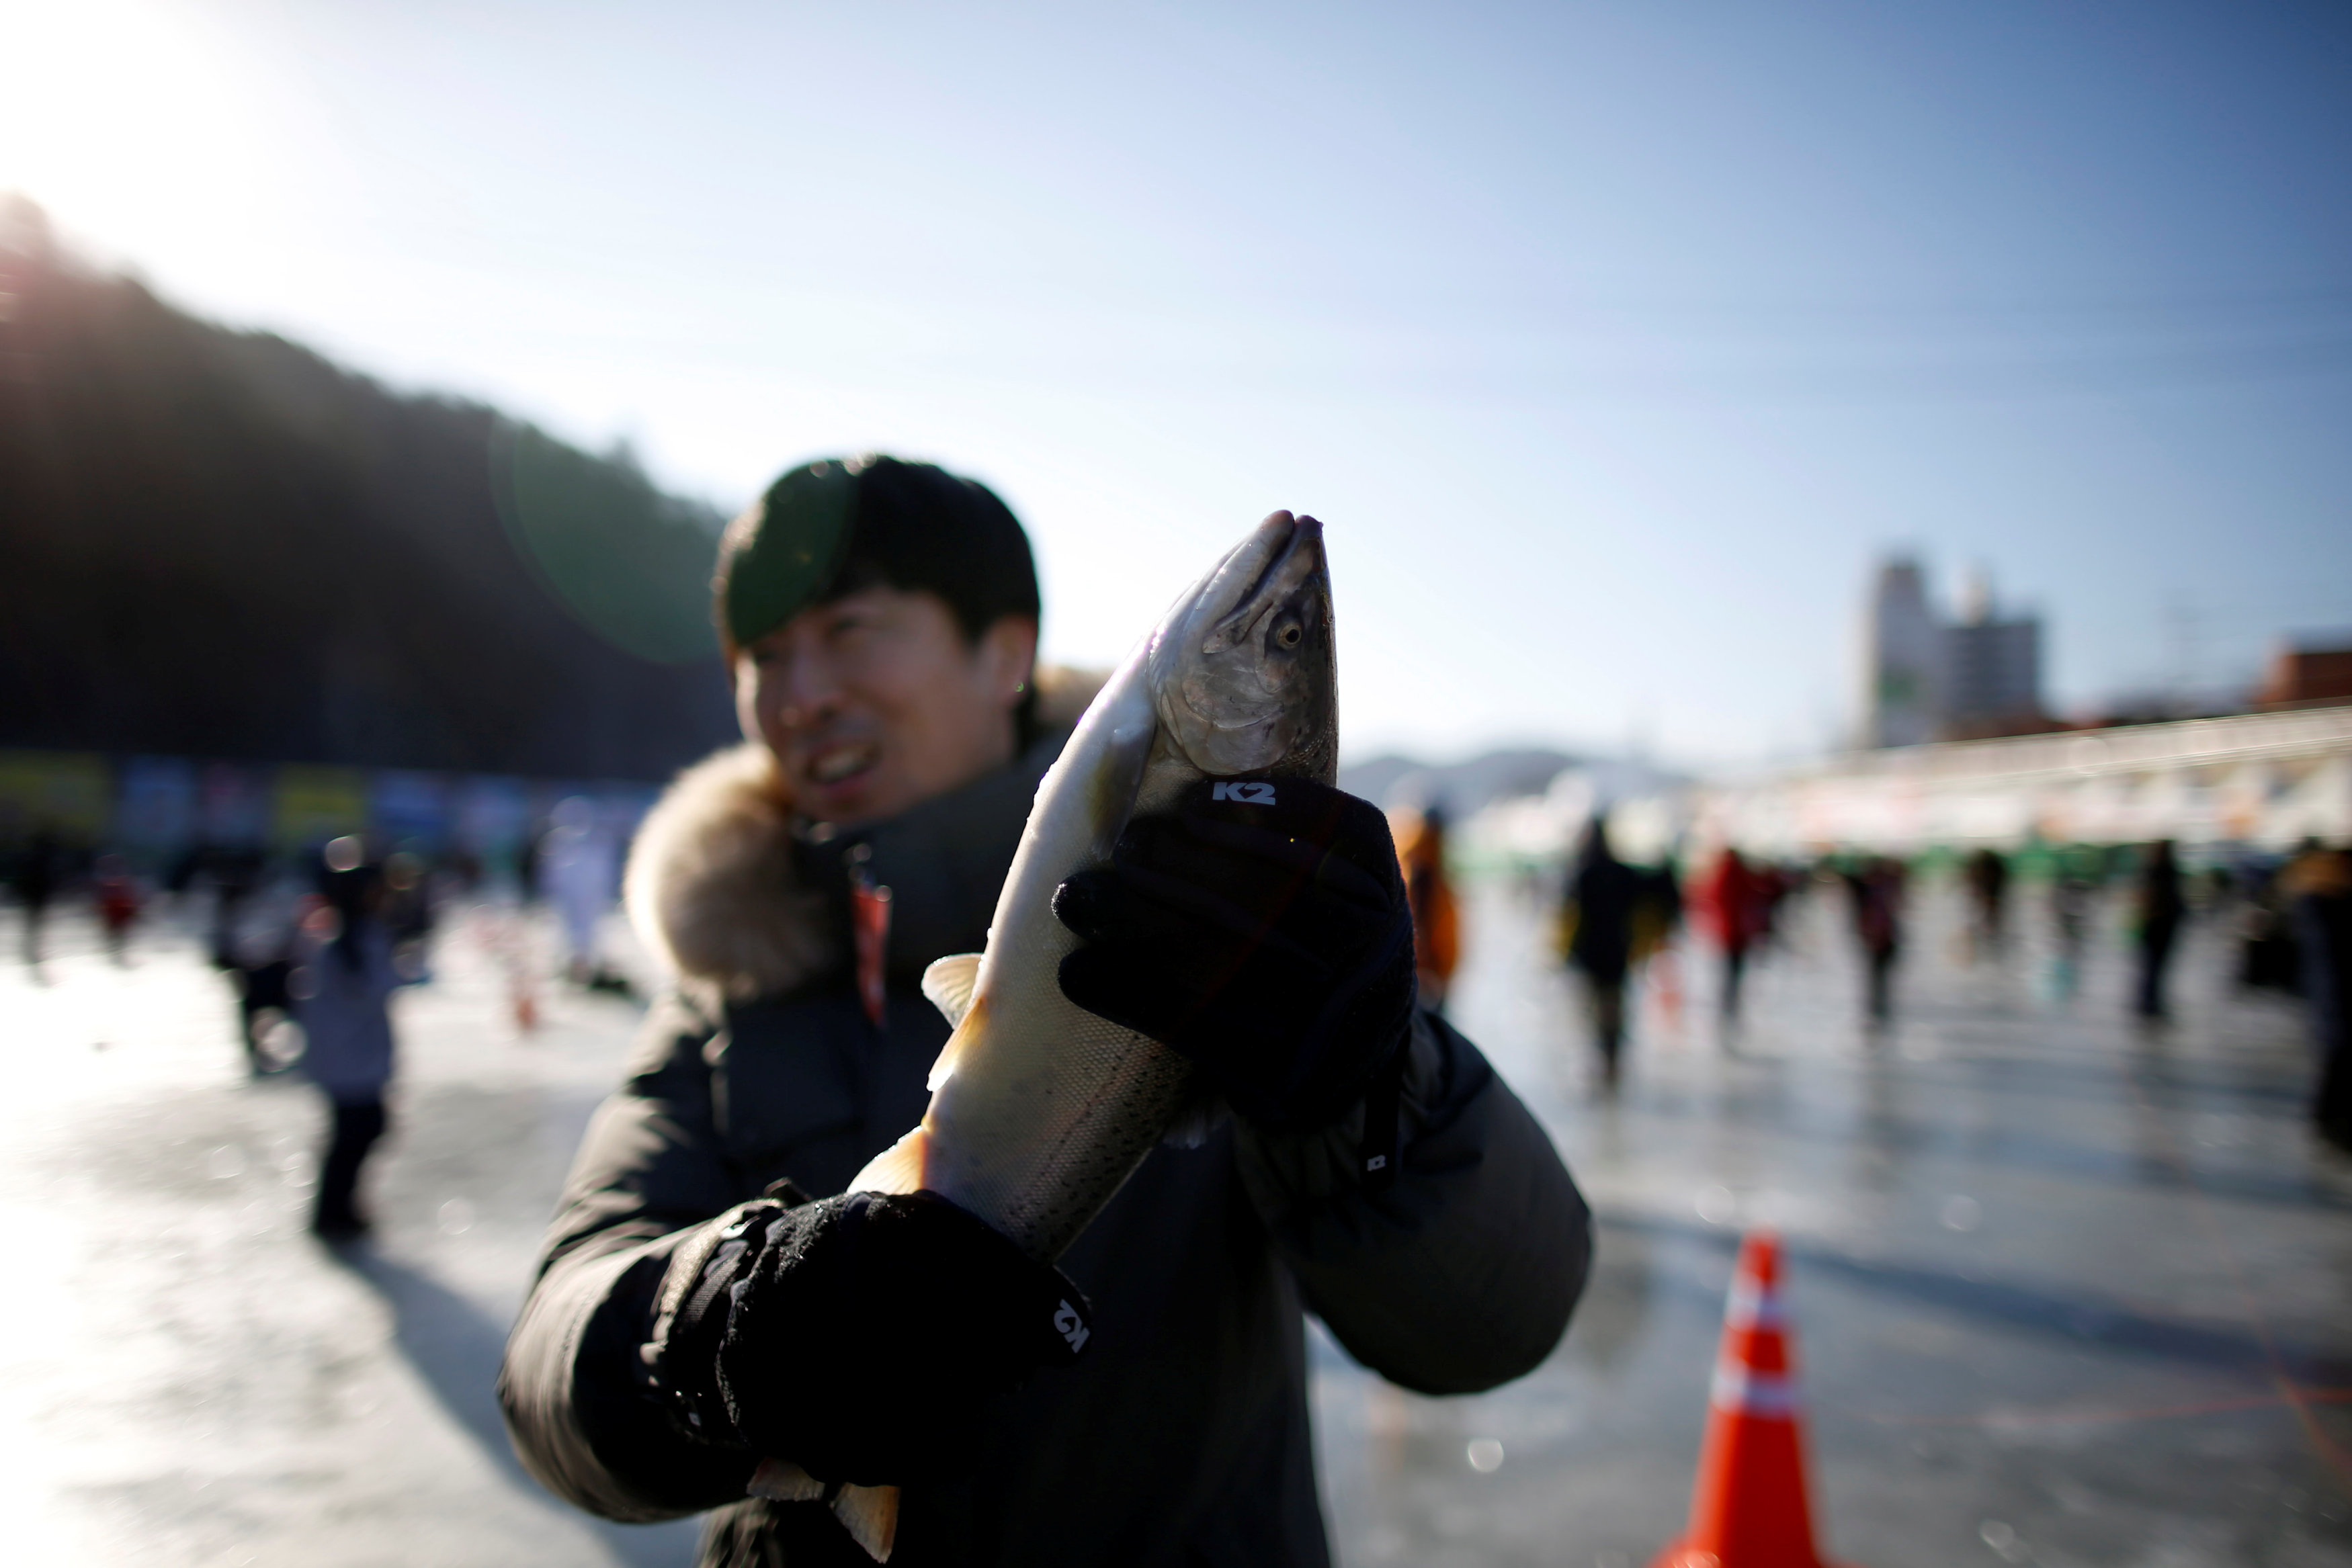 شاب يحمل سمكة بعد اصطيادها فى مهرجان الجليد بكوريا الجنوبية